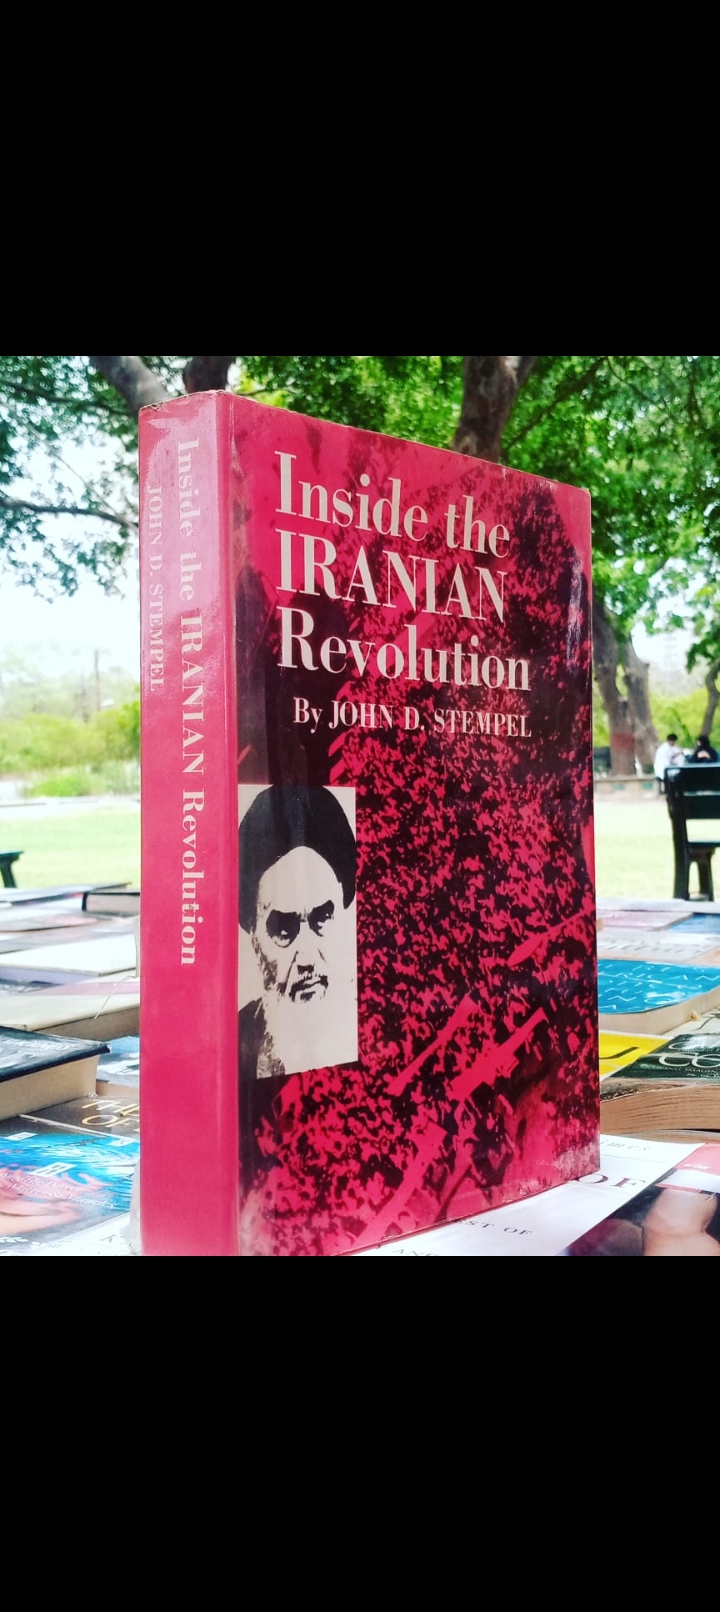 inside the iranian revolution by john d.stempel. original hardcover